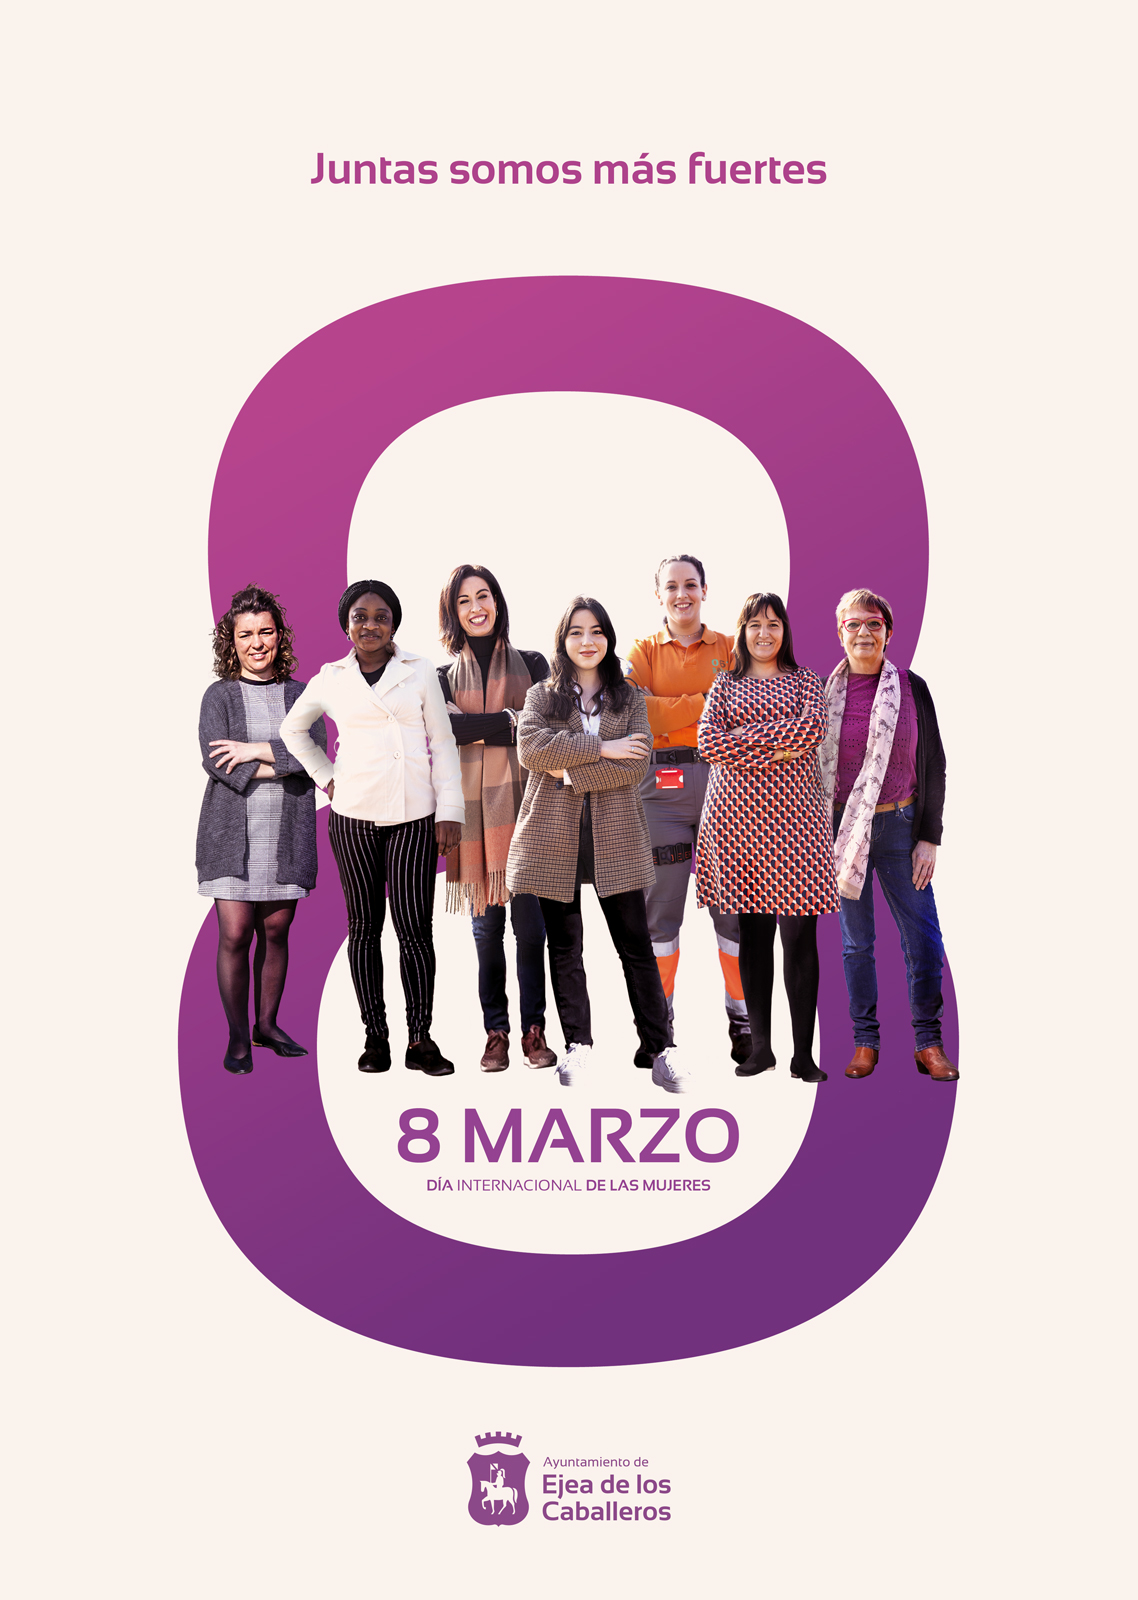 En este momento estás viendo «Juntas somos más fuertes» : El lema para conmemorar el 8 de Marzo y acompañar el programa de actividades de Igualdad del Ayuntamiento de Ejea de los Caballeros